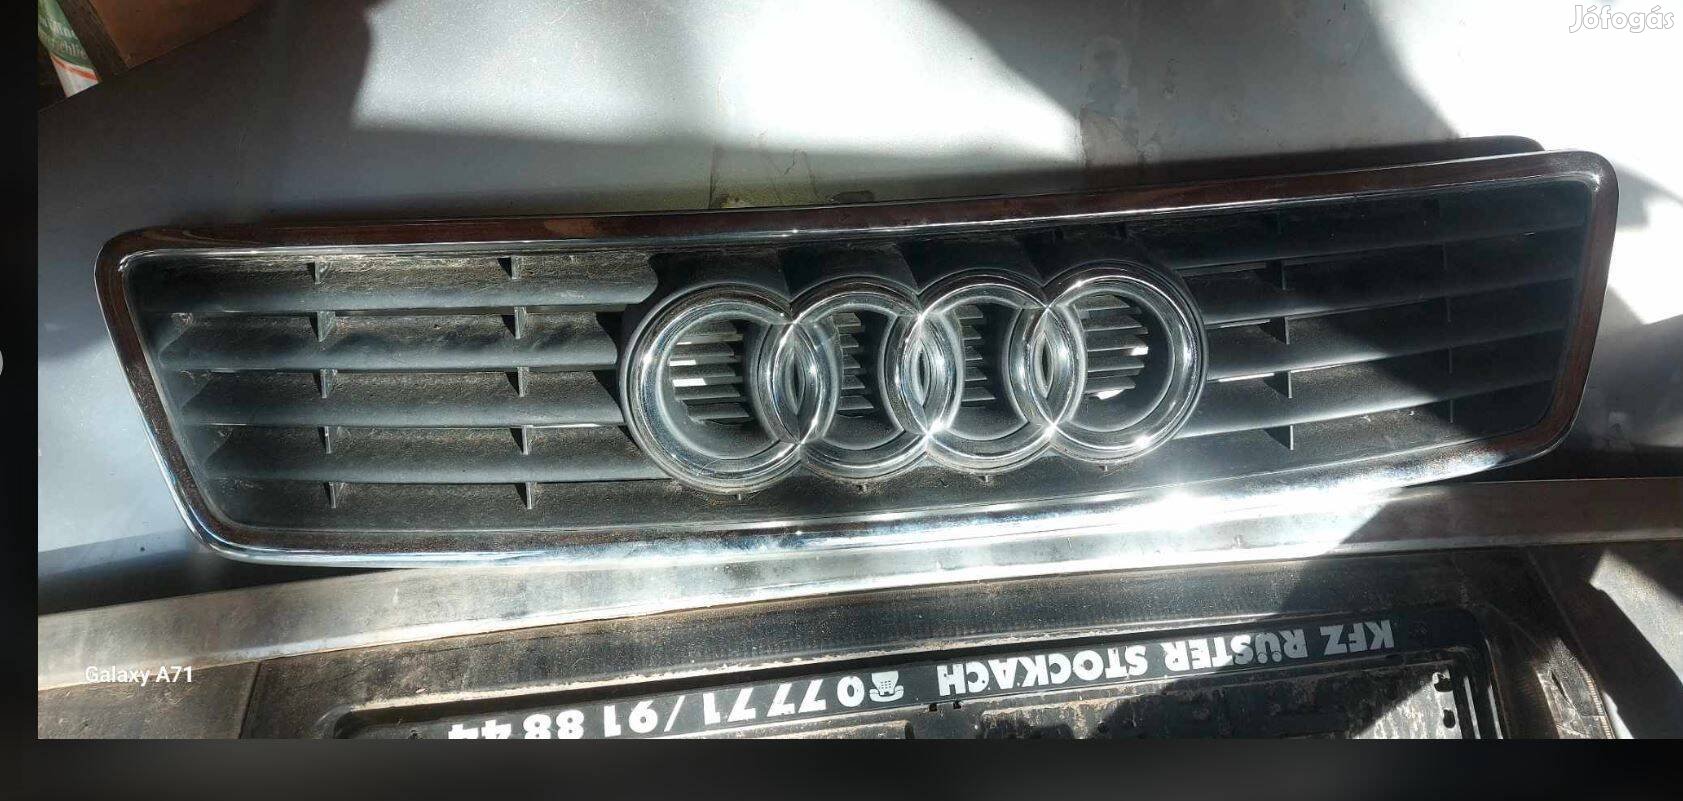 Audi hűtőrács b5 modell, 99 es évjárat., hibátlan állapot